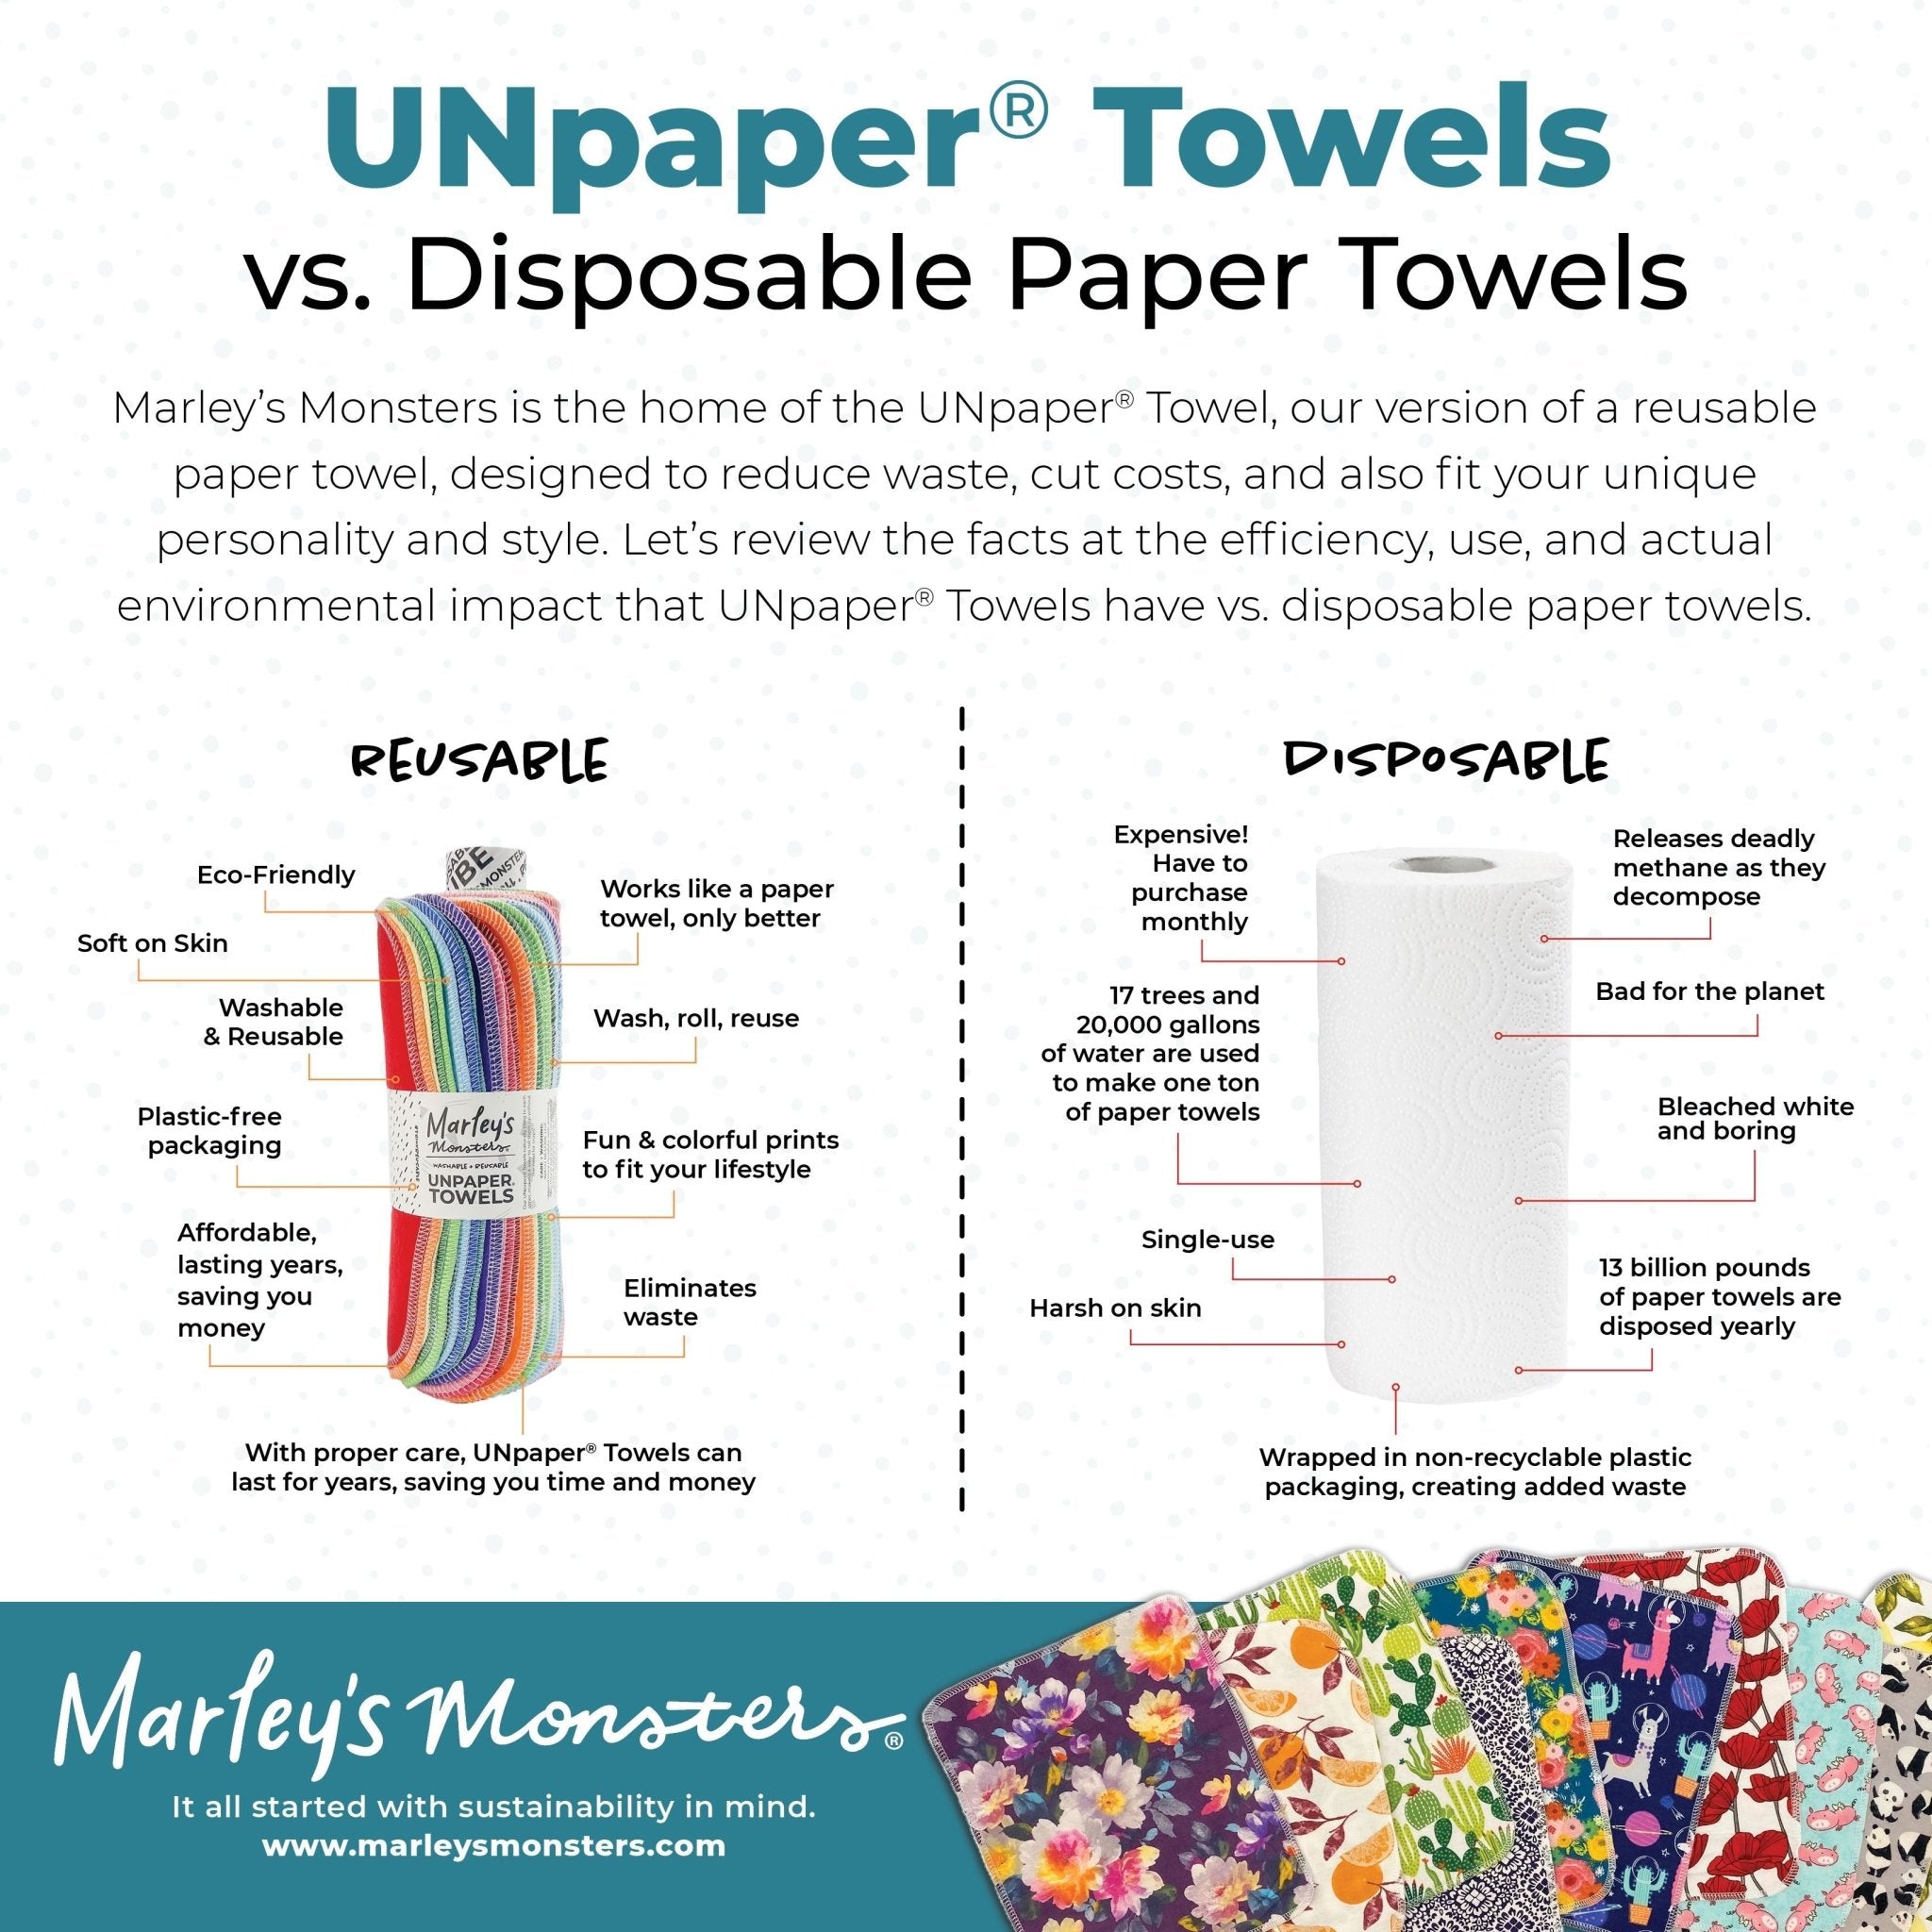 UNpaper® Towels: Organic - Marley's Monsters